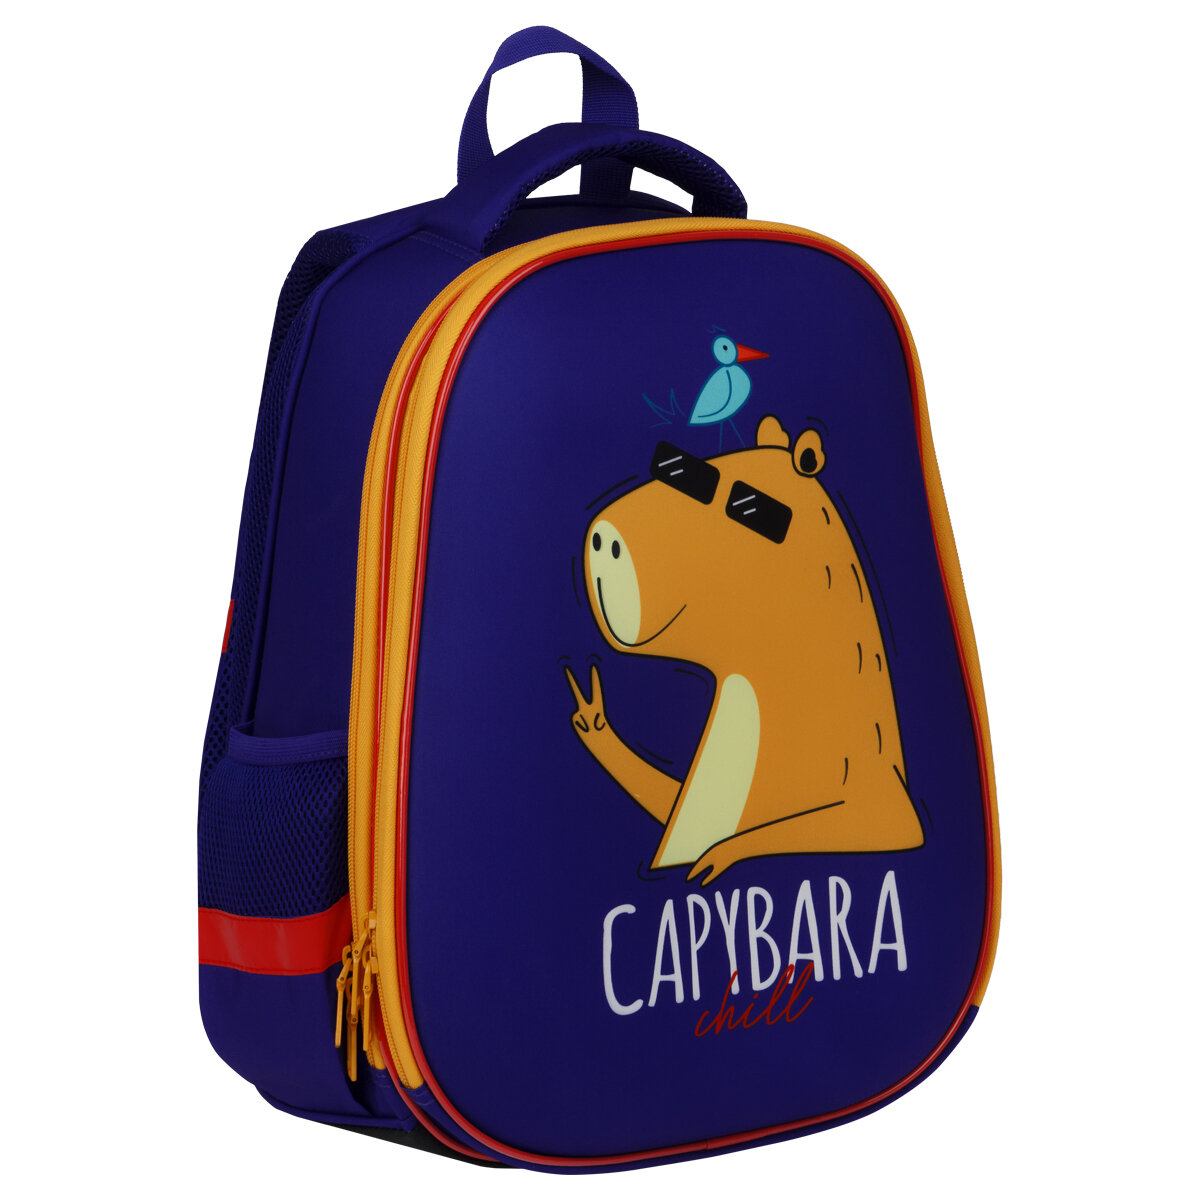 Ранец ArtSpace School Friend "Capybara" 39*30*18см, 2 отделения, 2 кармана, анатомическая спинка